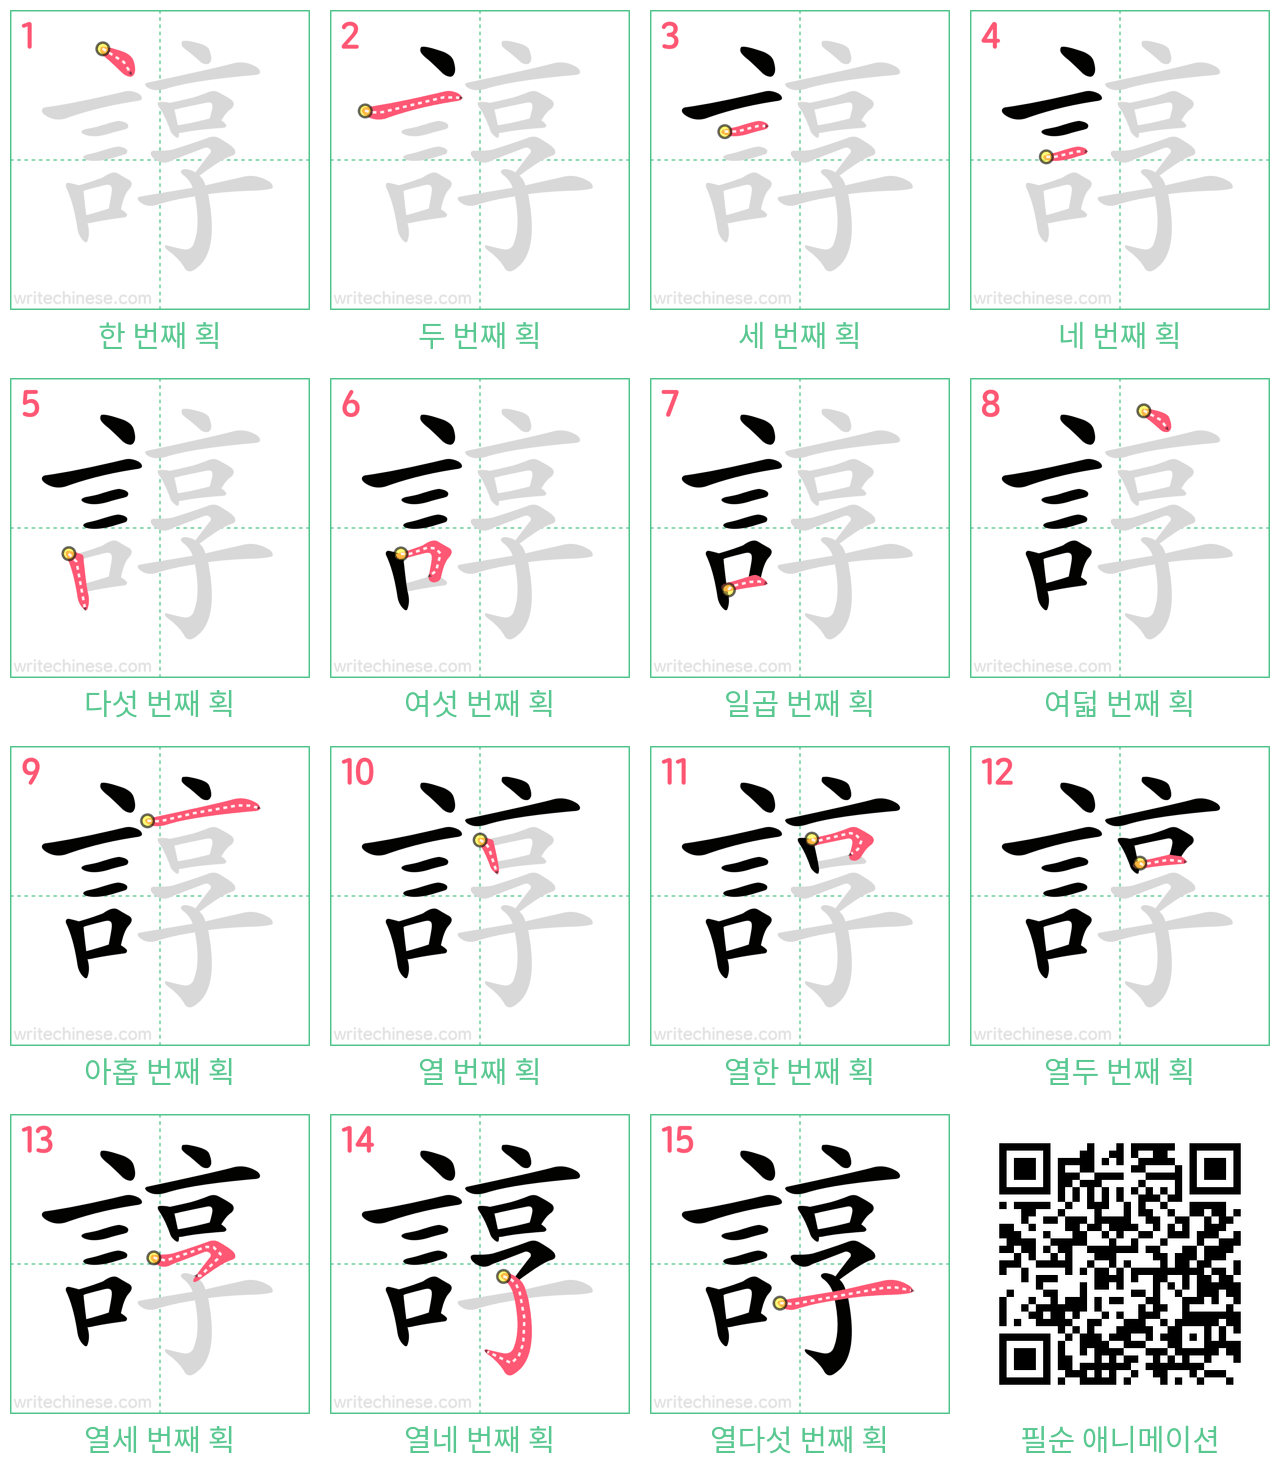 諄 step-by-step stroke order diagrams